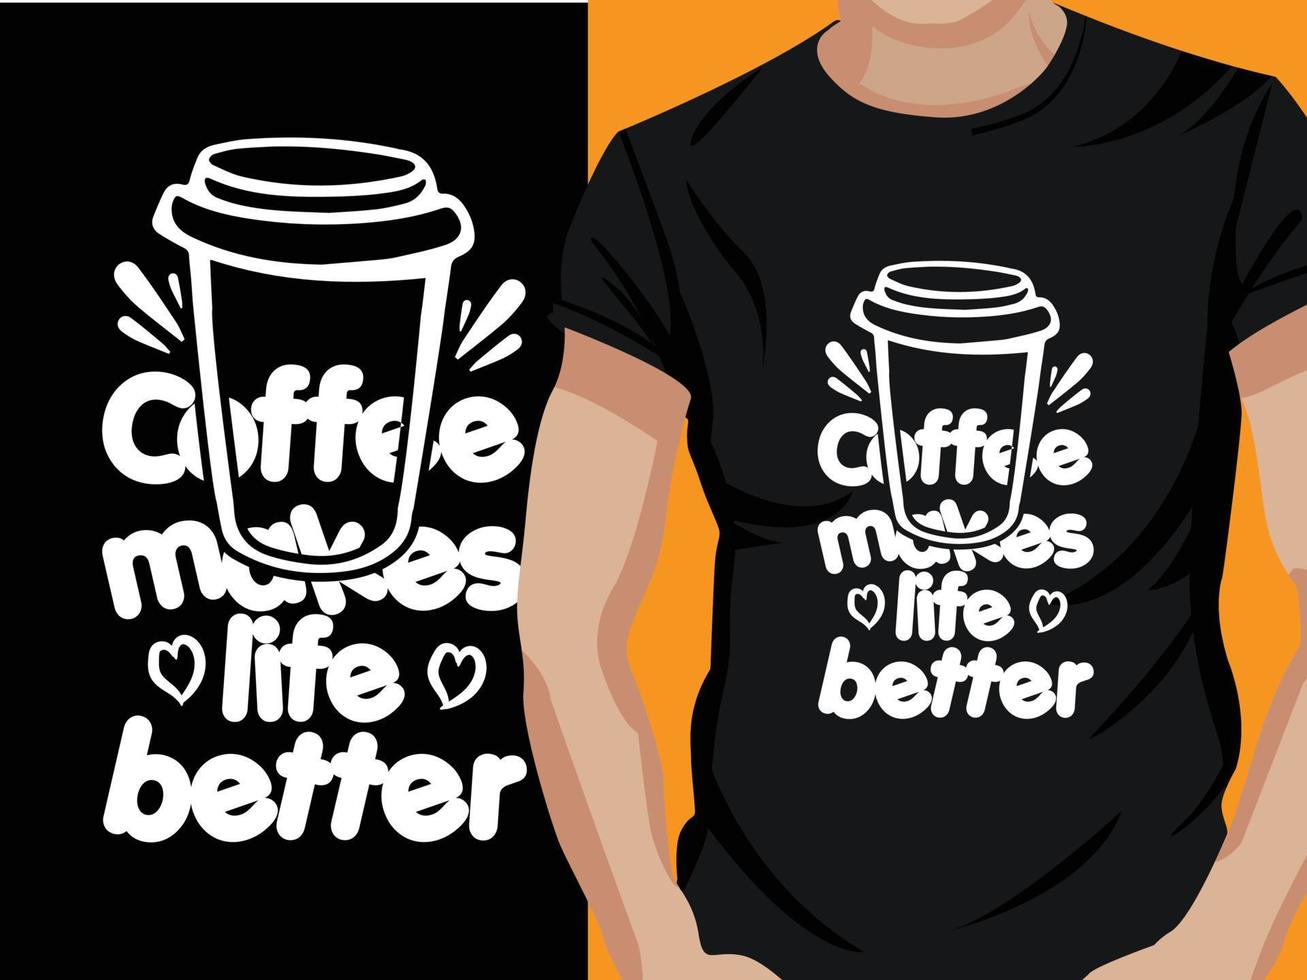 koffie t-shirt ontwerp vector